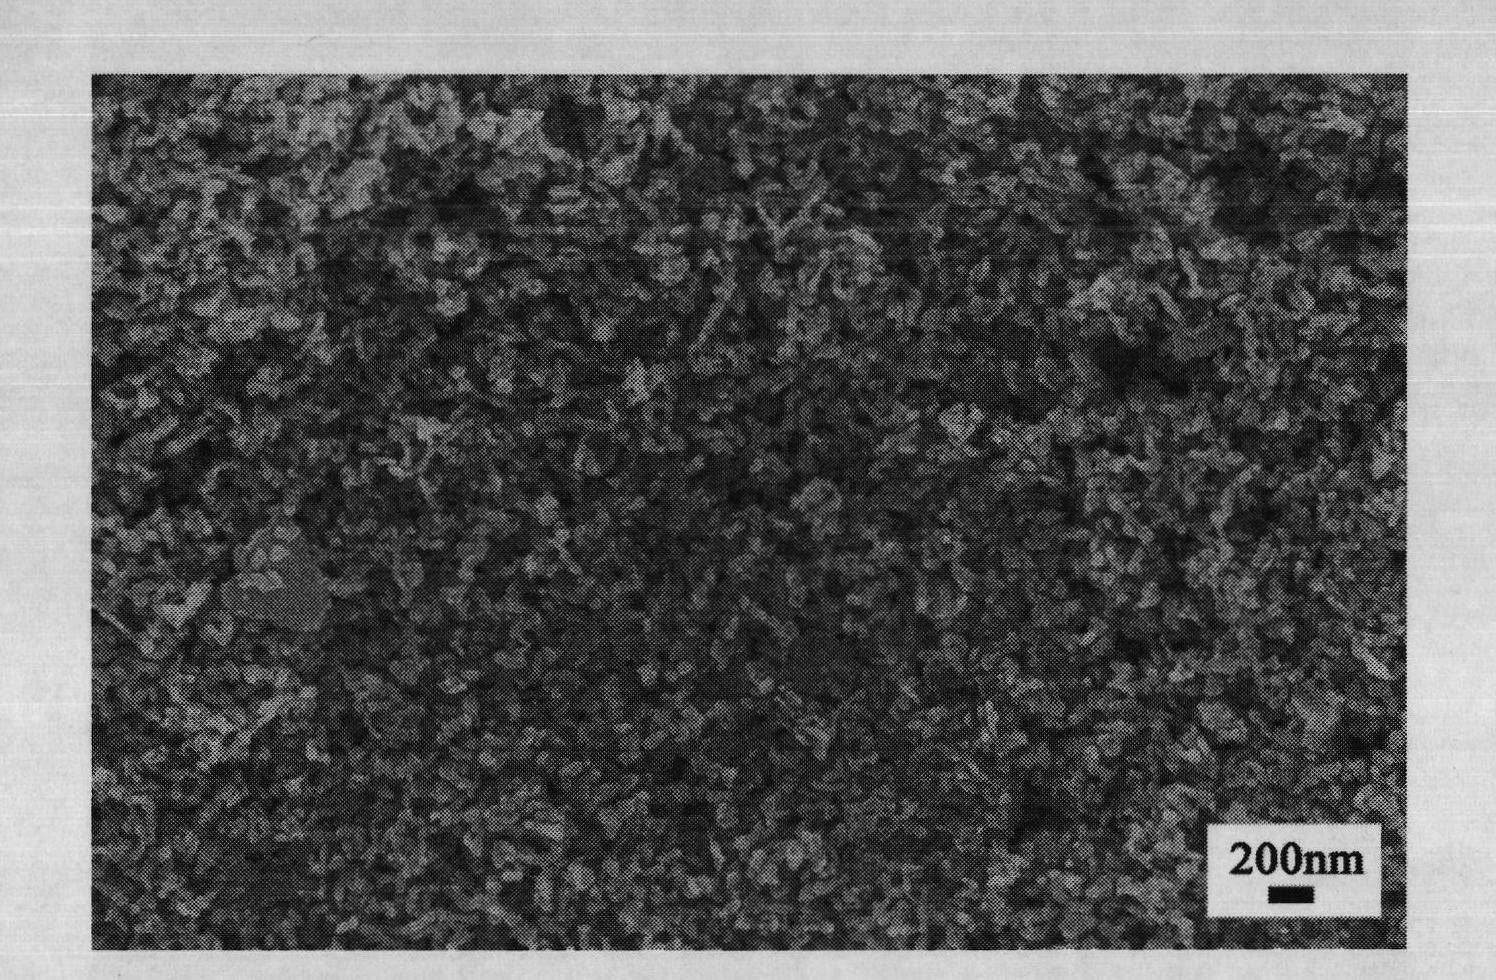 Method for preparing SiO2-modified ZnO nano-porous thin film composite electrode